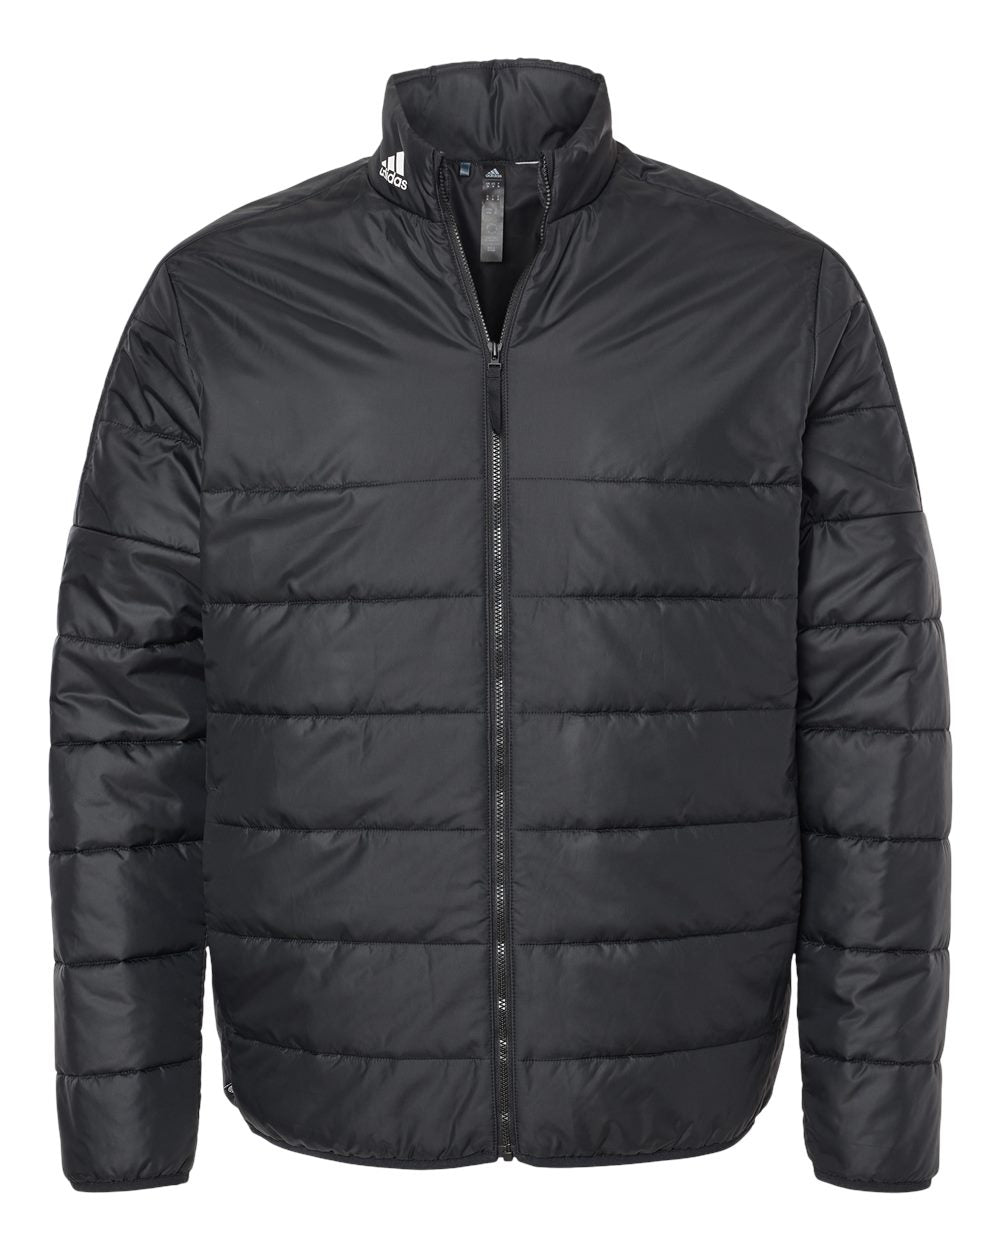 Puffer Men's Jacket - Adidas A570